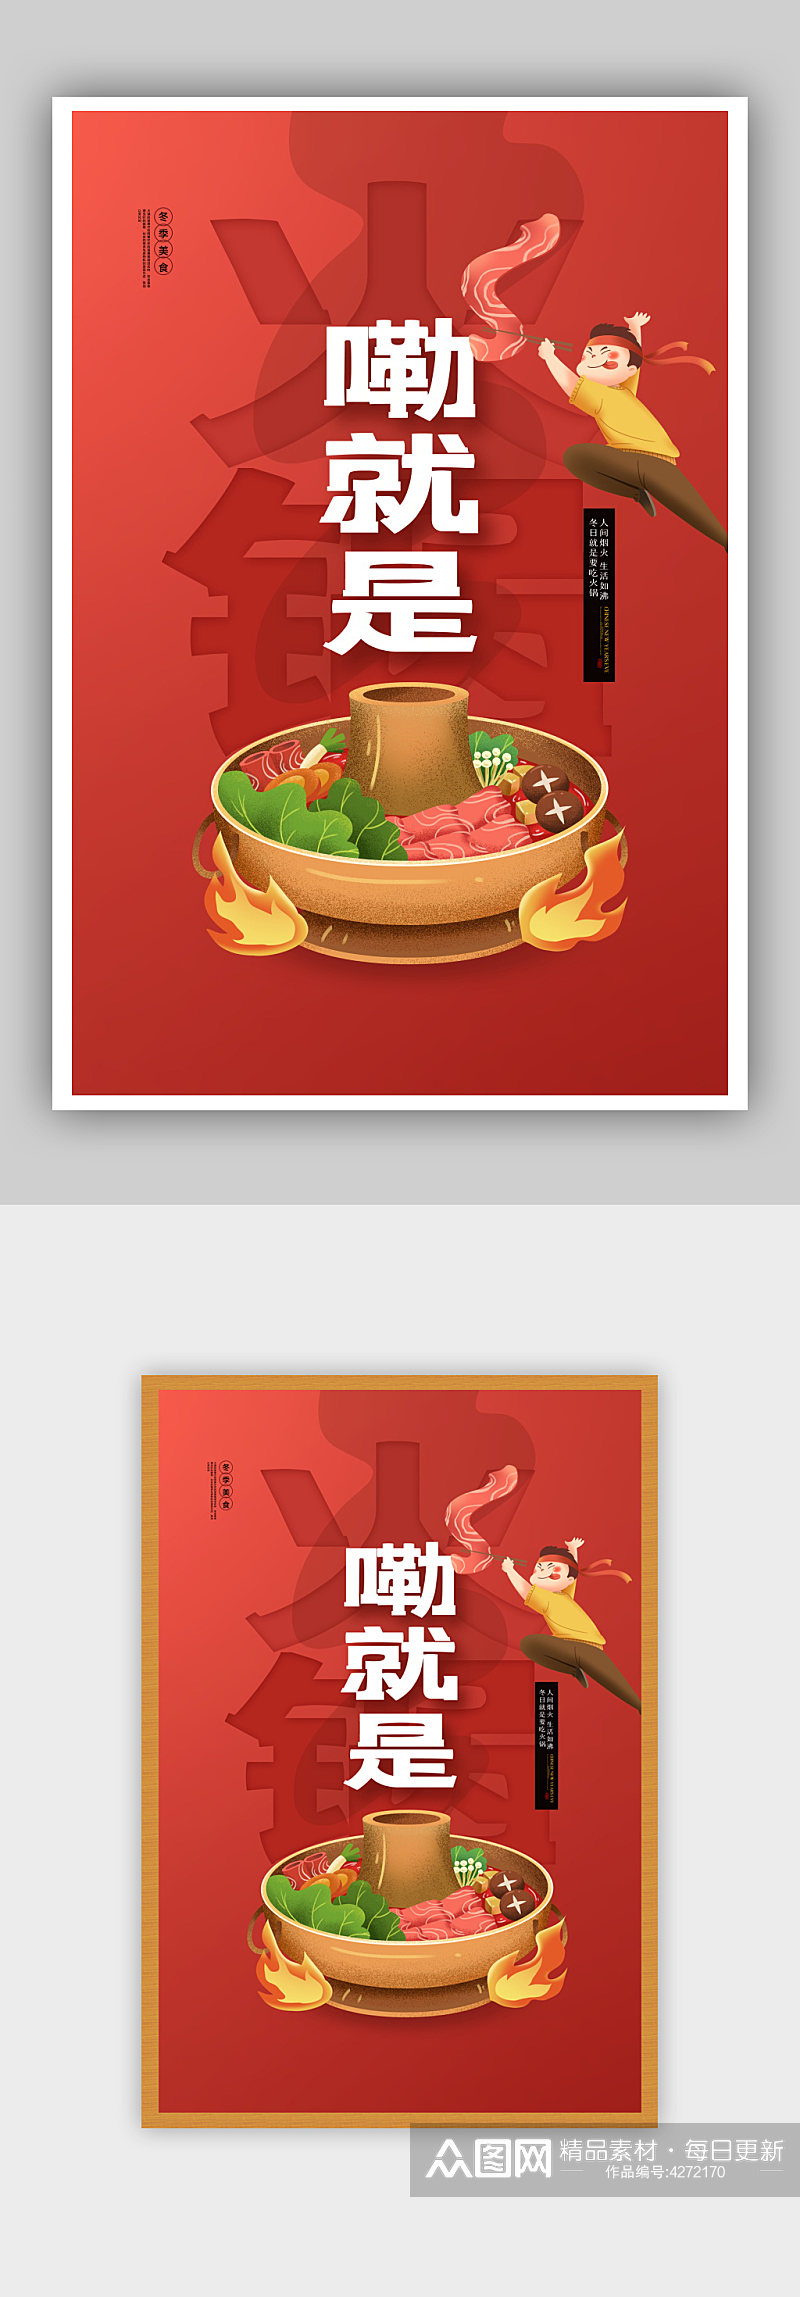 简约红色嘞就是火锅美食餐饮宣传海报素材